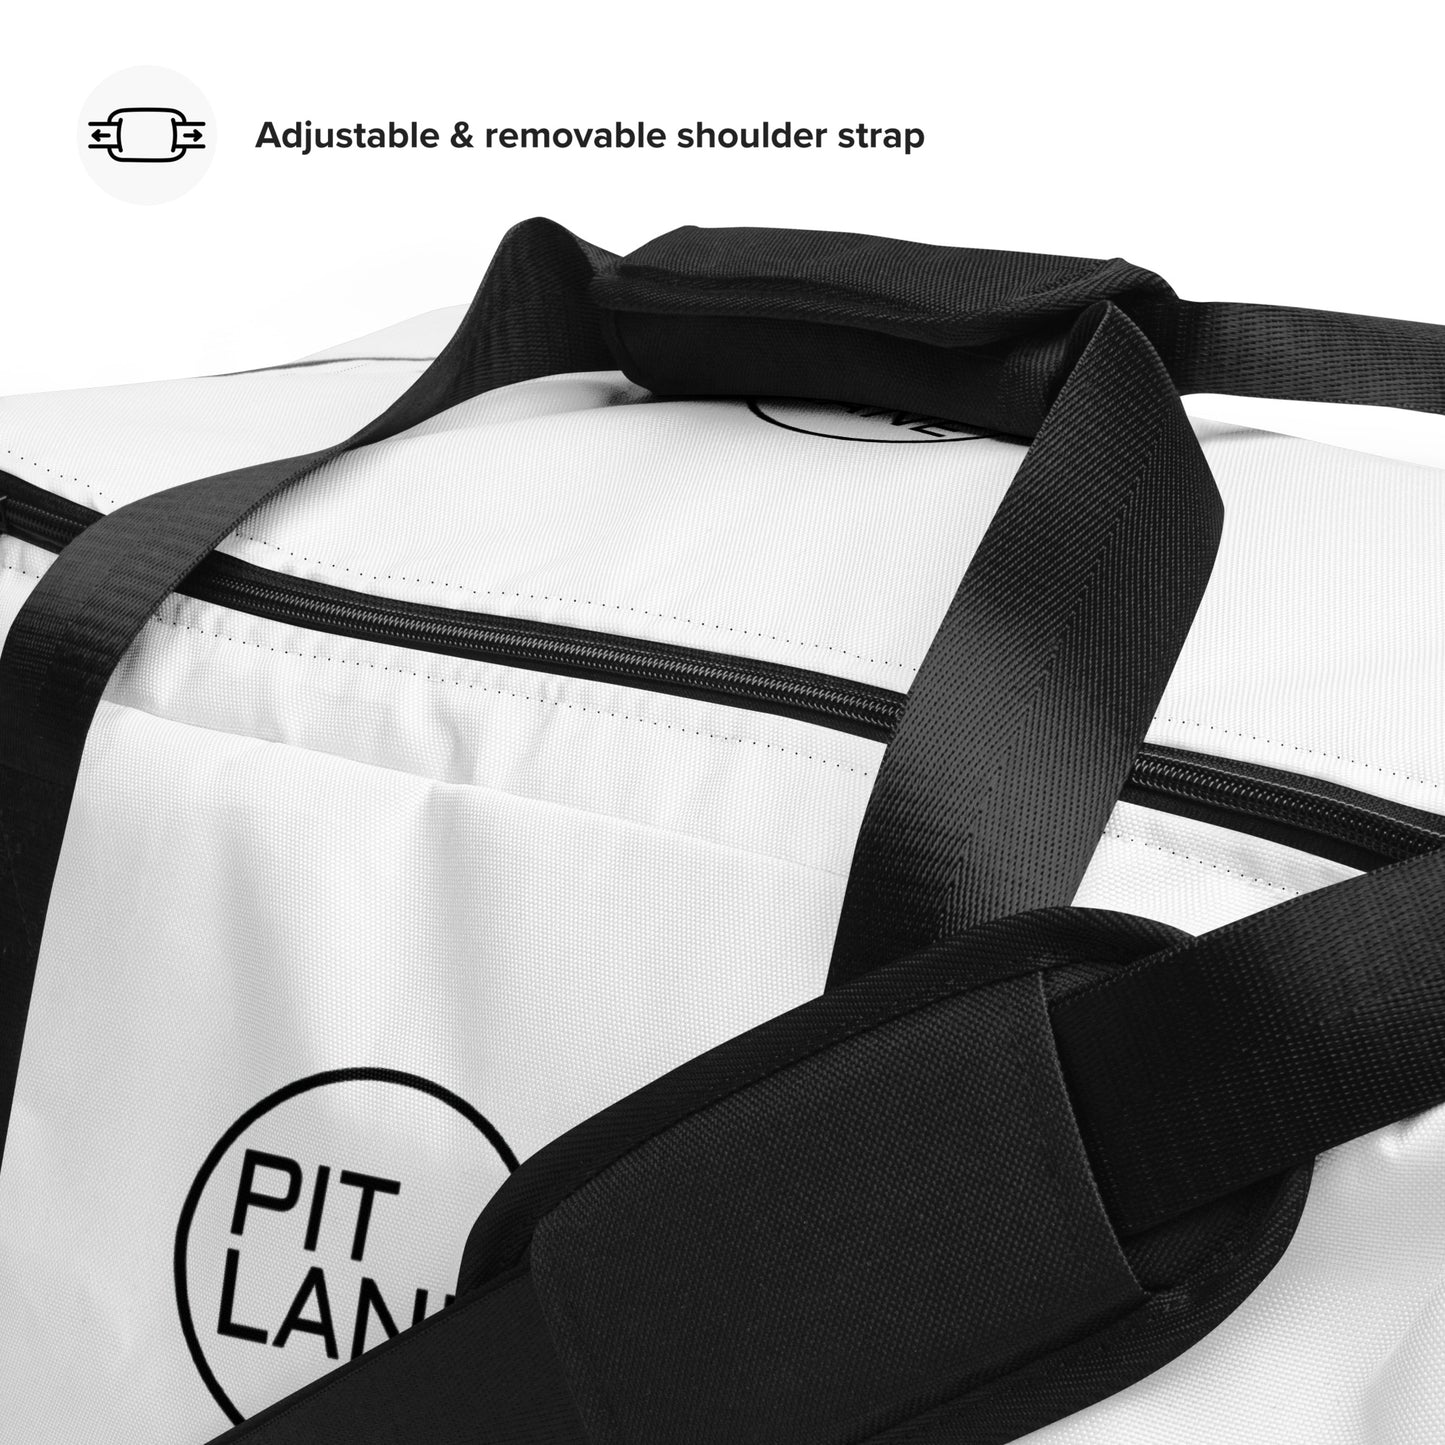 Pit Lane clothing duffel bag